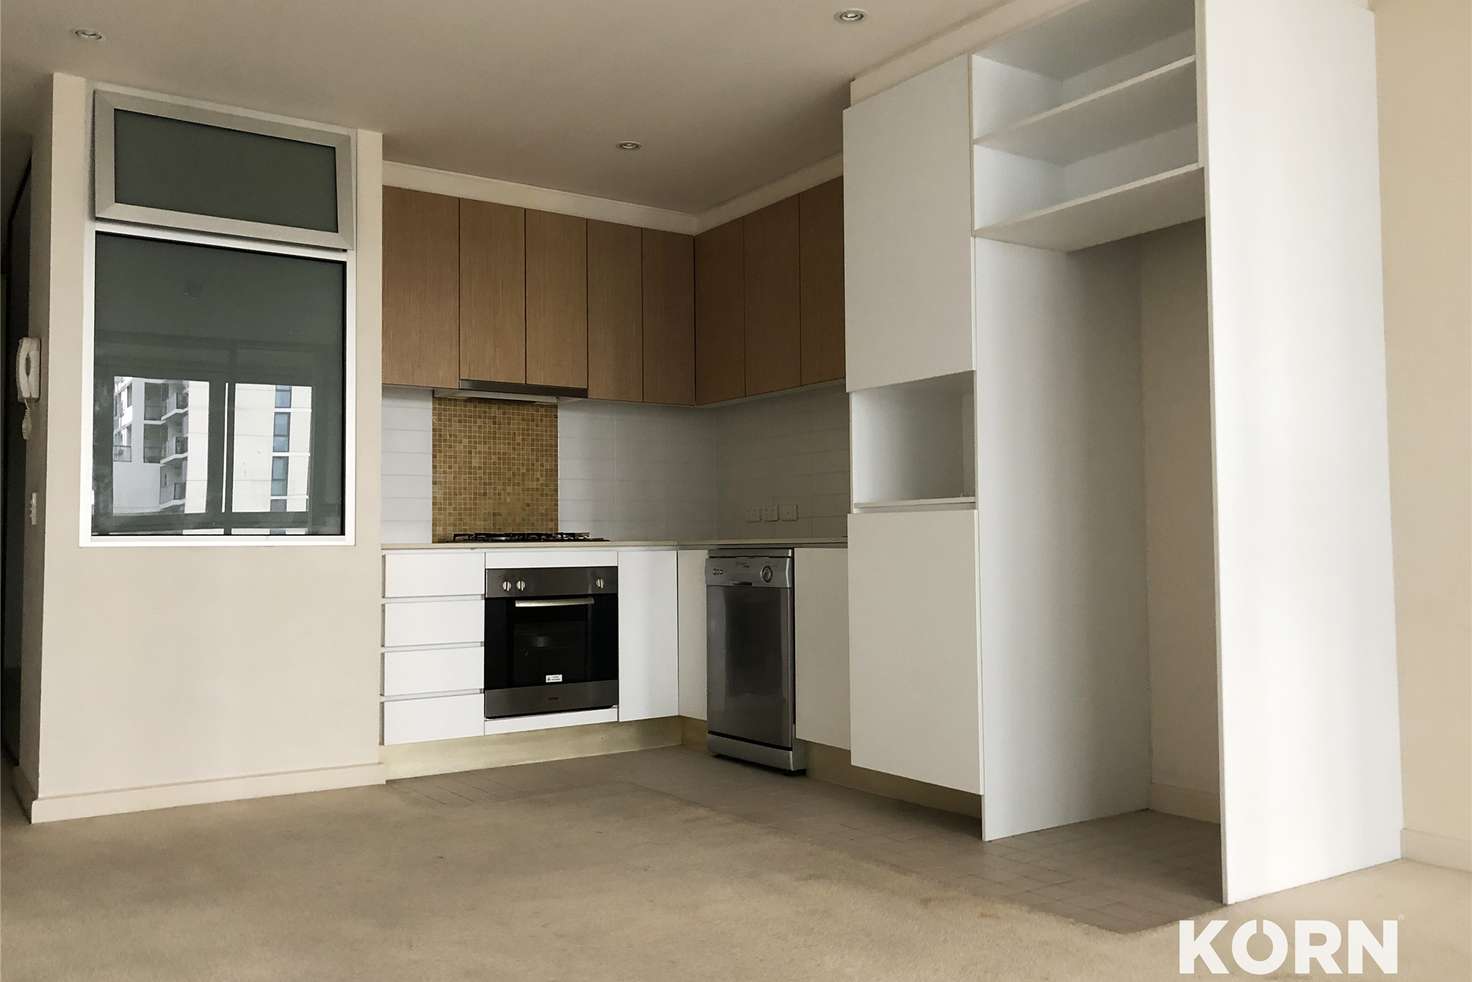 Main view of Homely apartment listing, 617/185 Morphett Street, Adelaide SA 5000